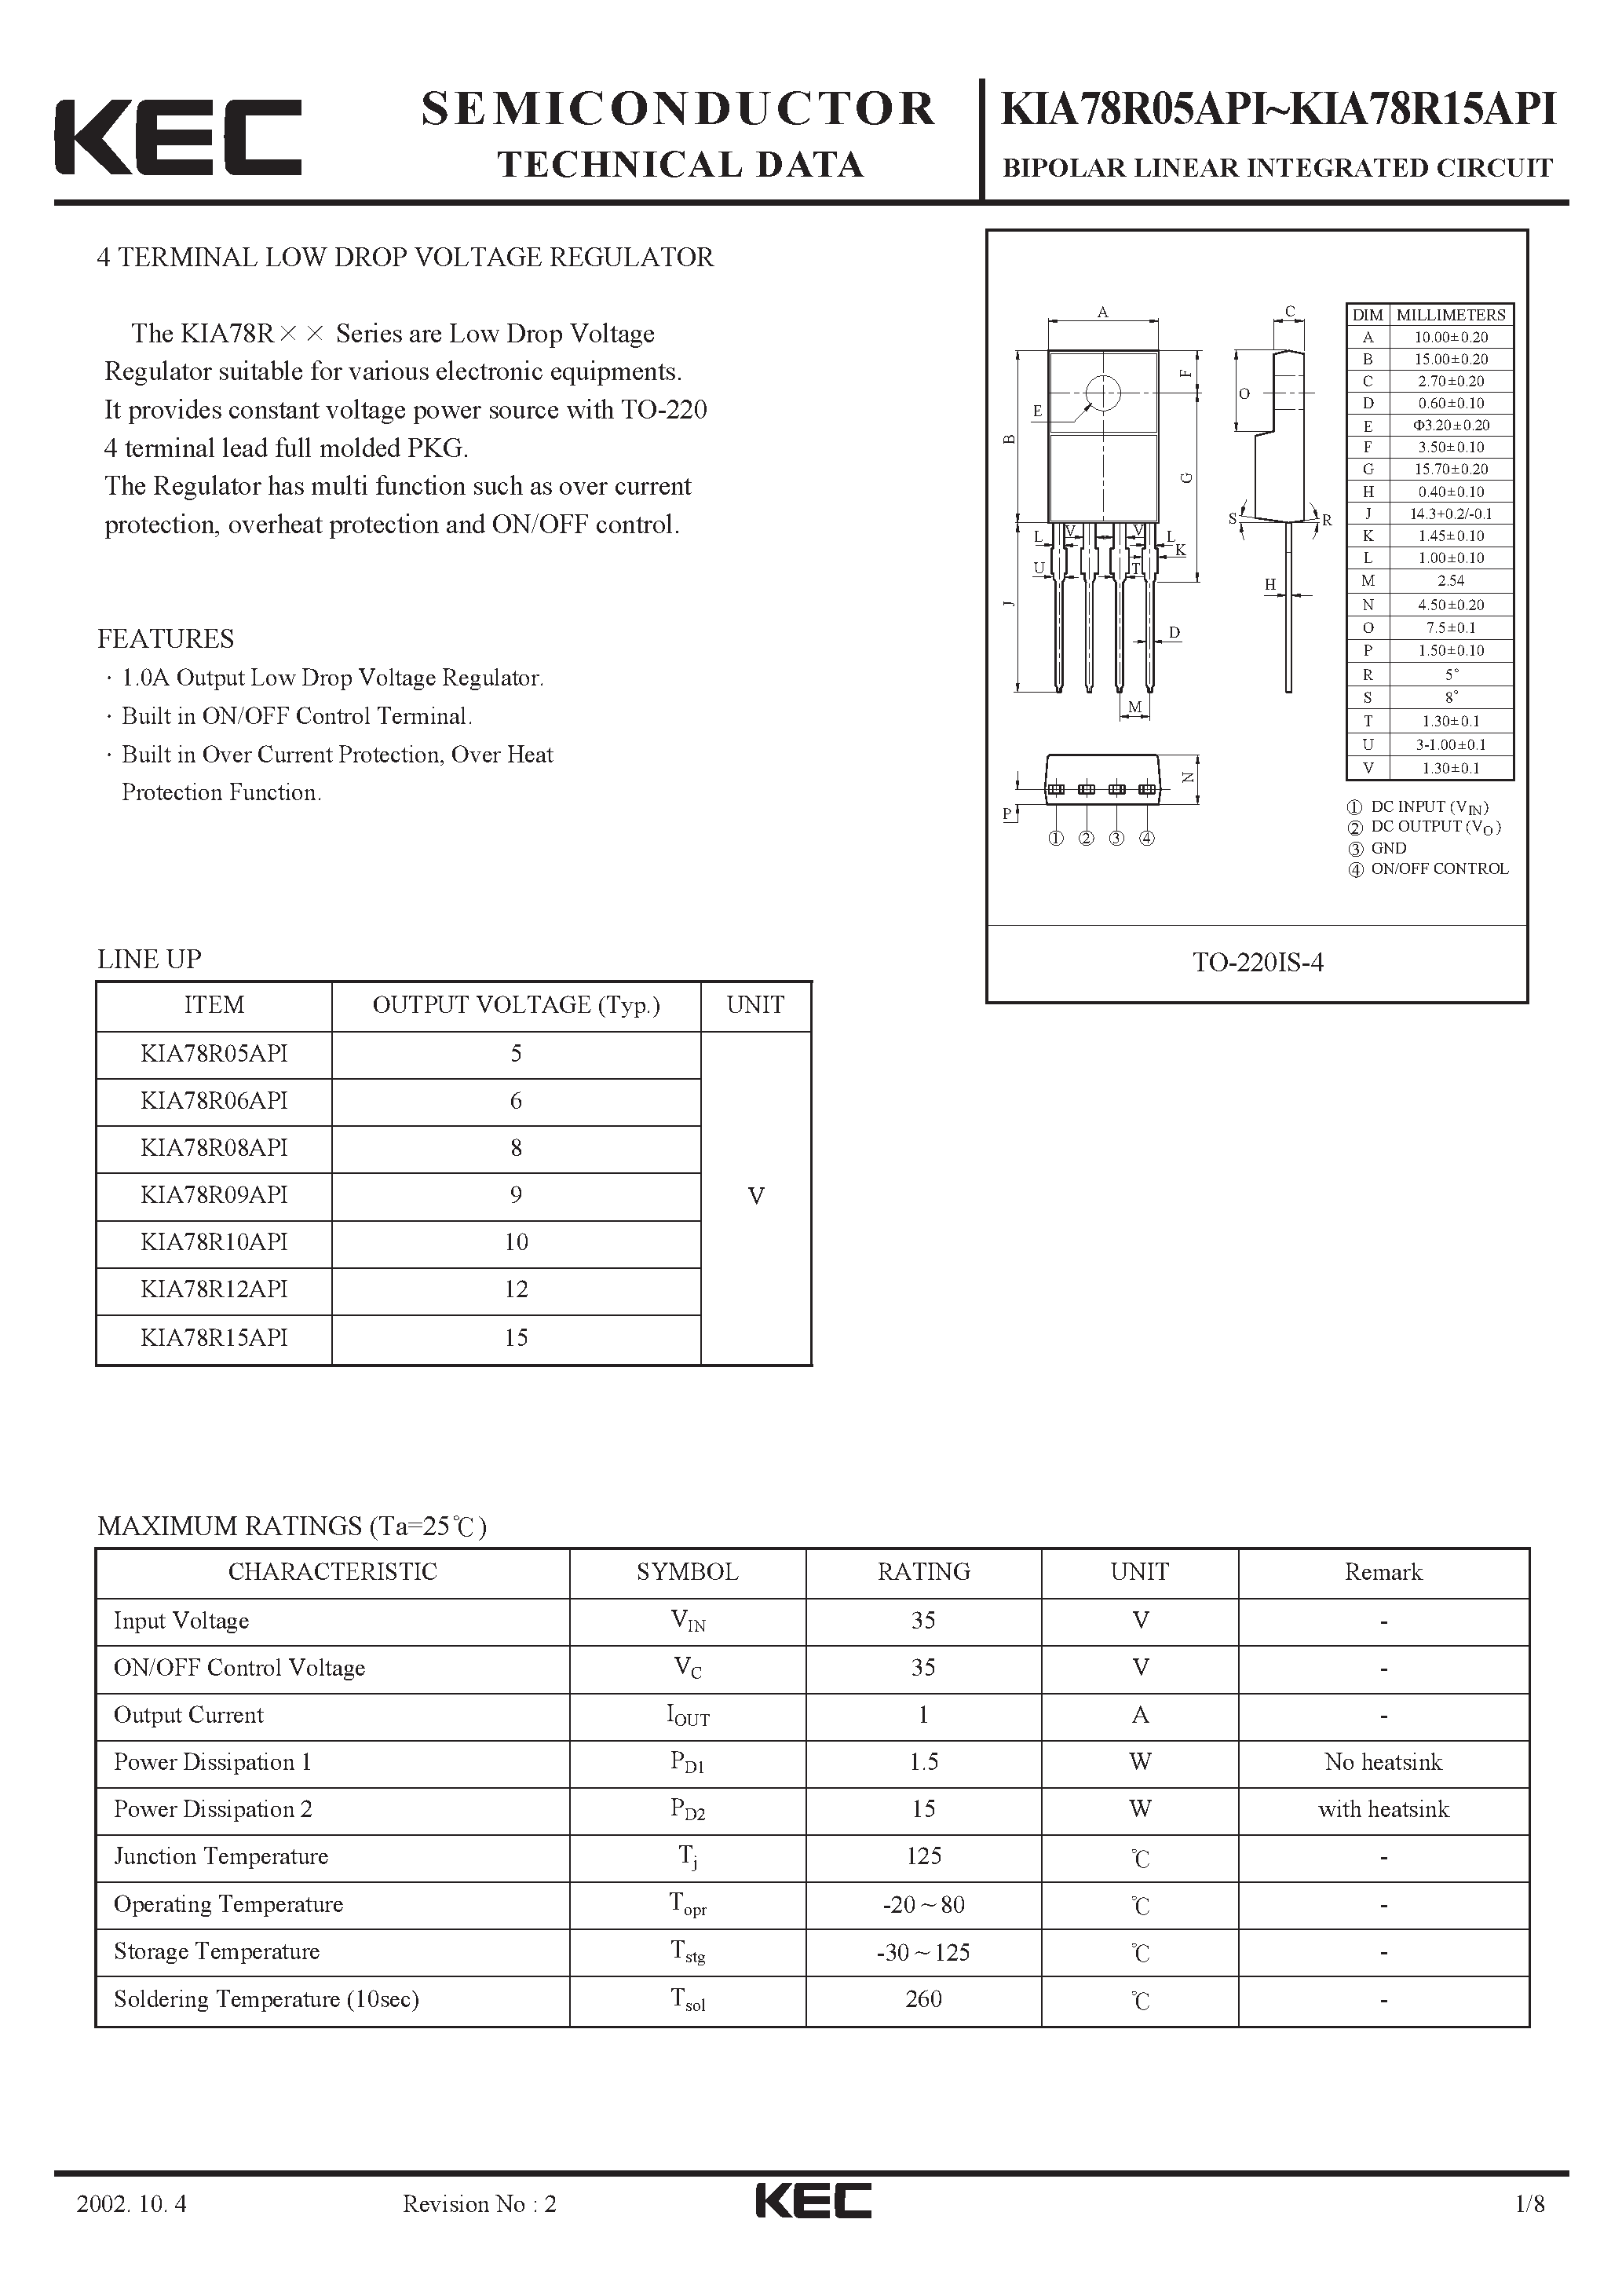 Datasheet KIA78R10API - BIPOLAR LINEAR INTEGRATED CIRCUIT (4 TERMINAL LOW DROP VOLTAGE REGULATOR) page 1